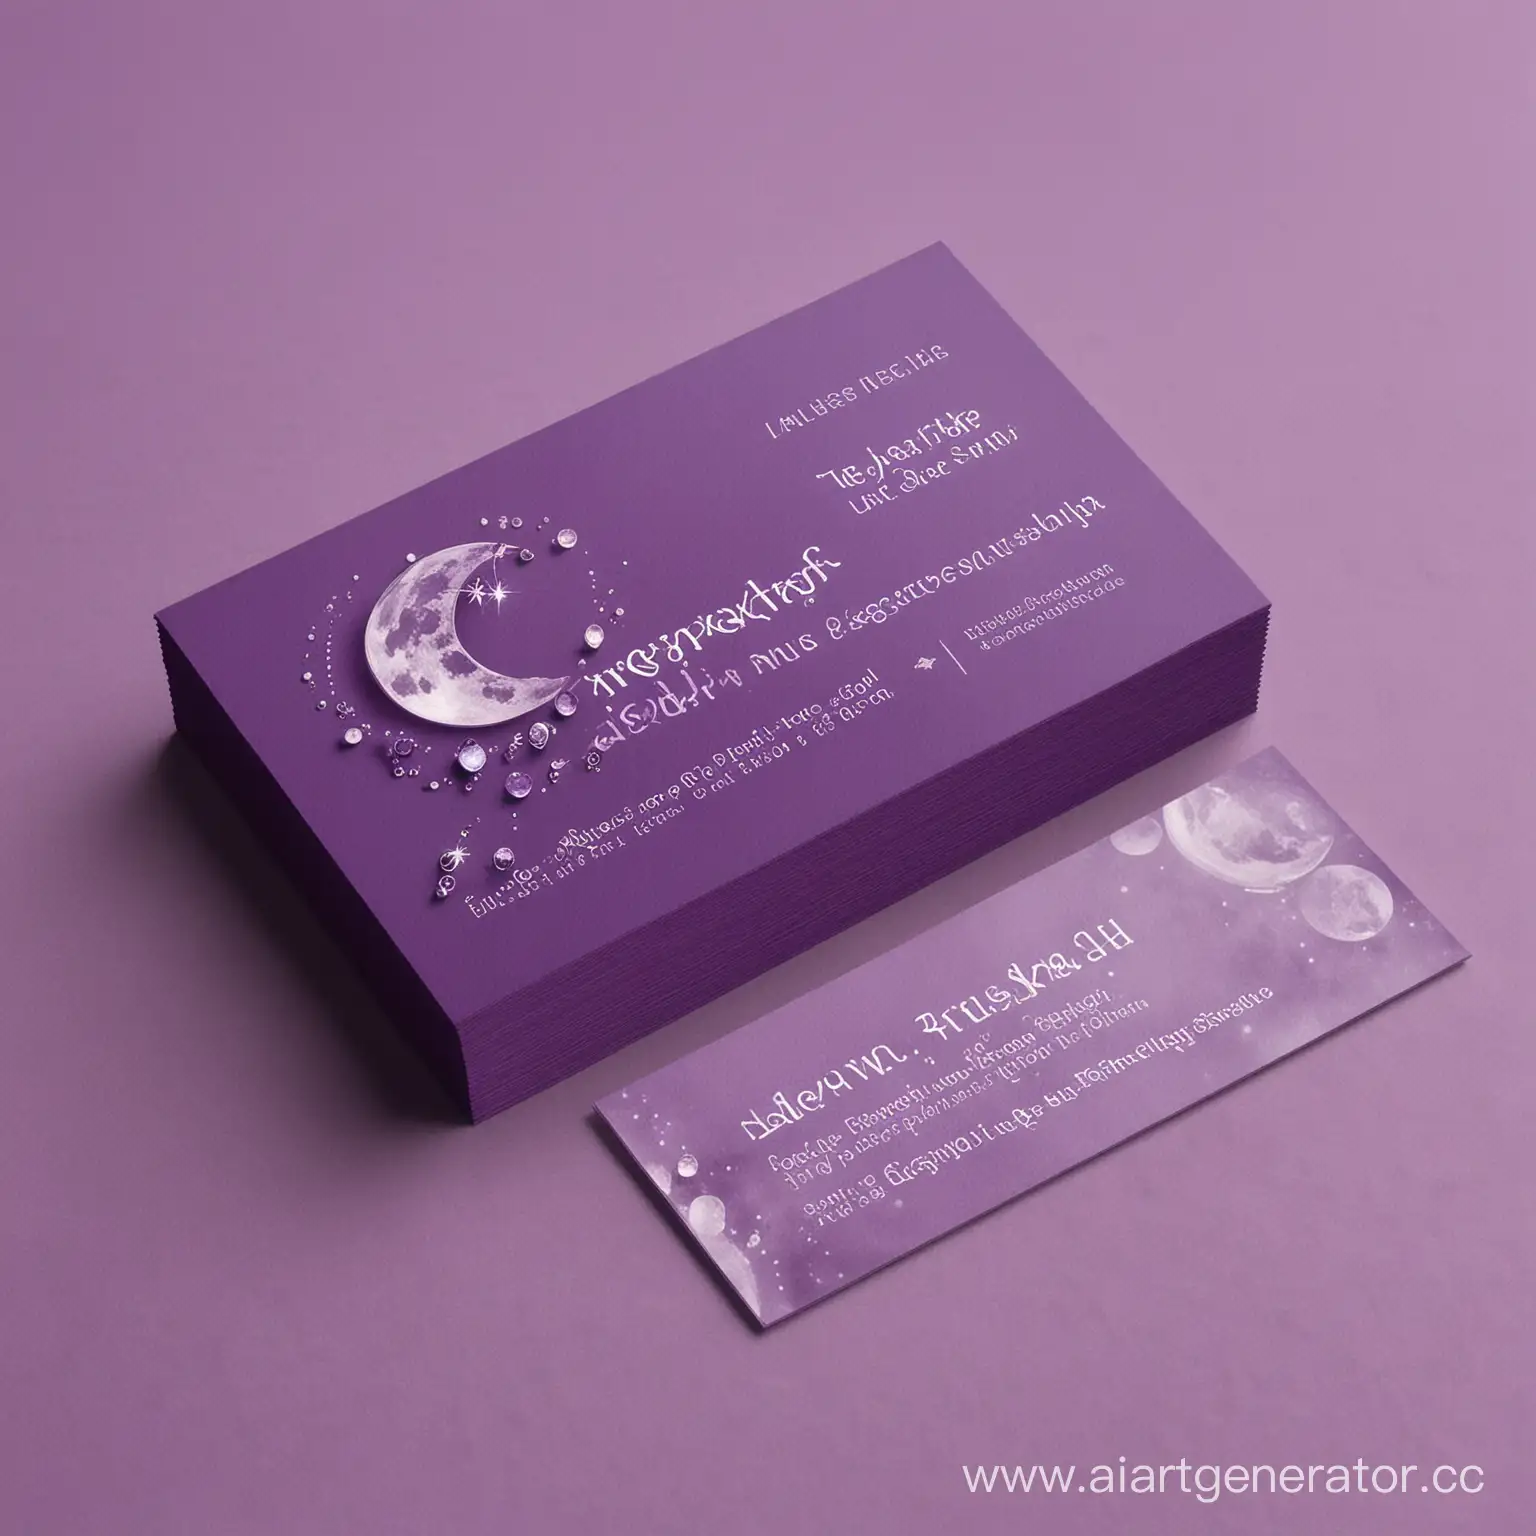 визитка для ювелирного магазина в фиолетовых оттенках с ассоциациями луна и кристалл